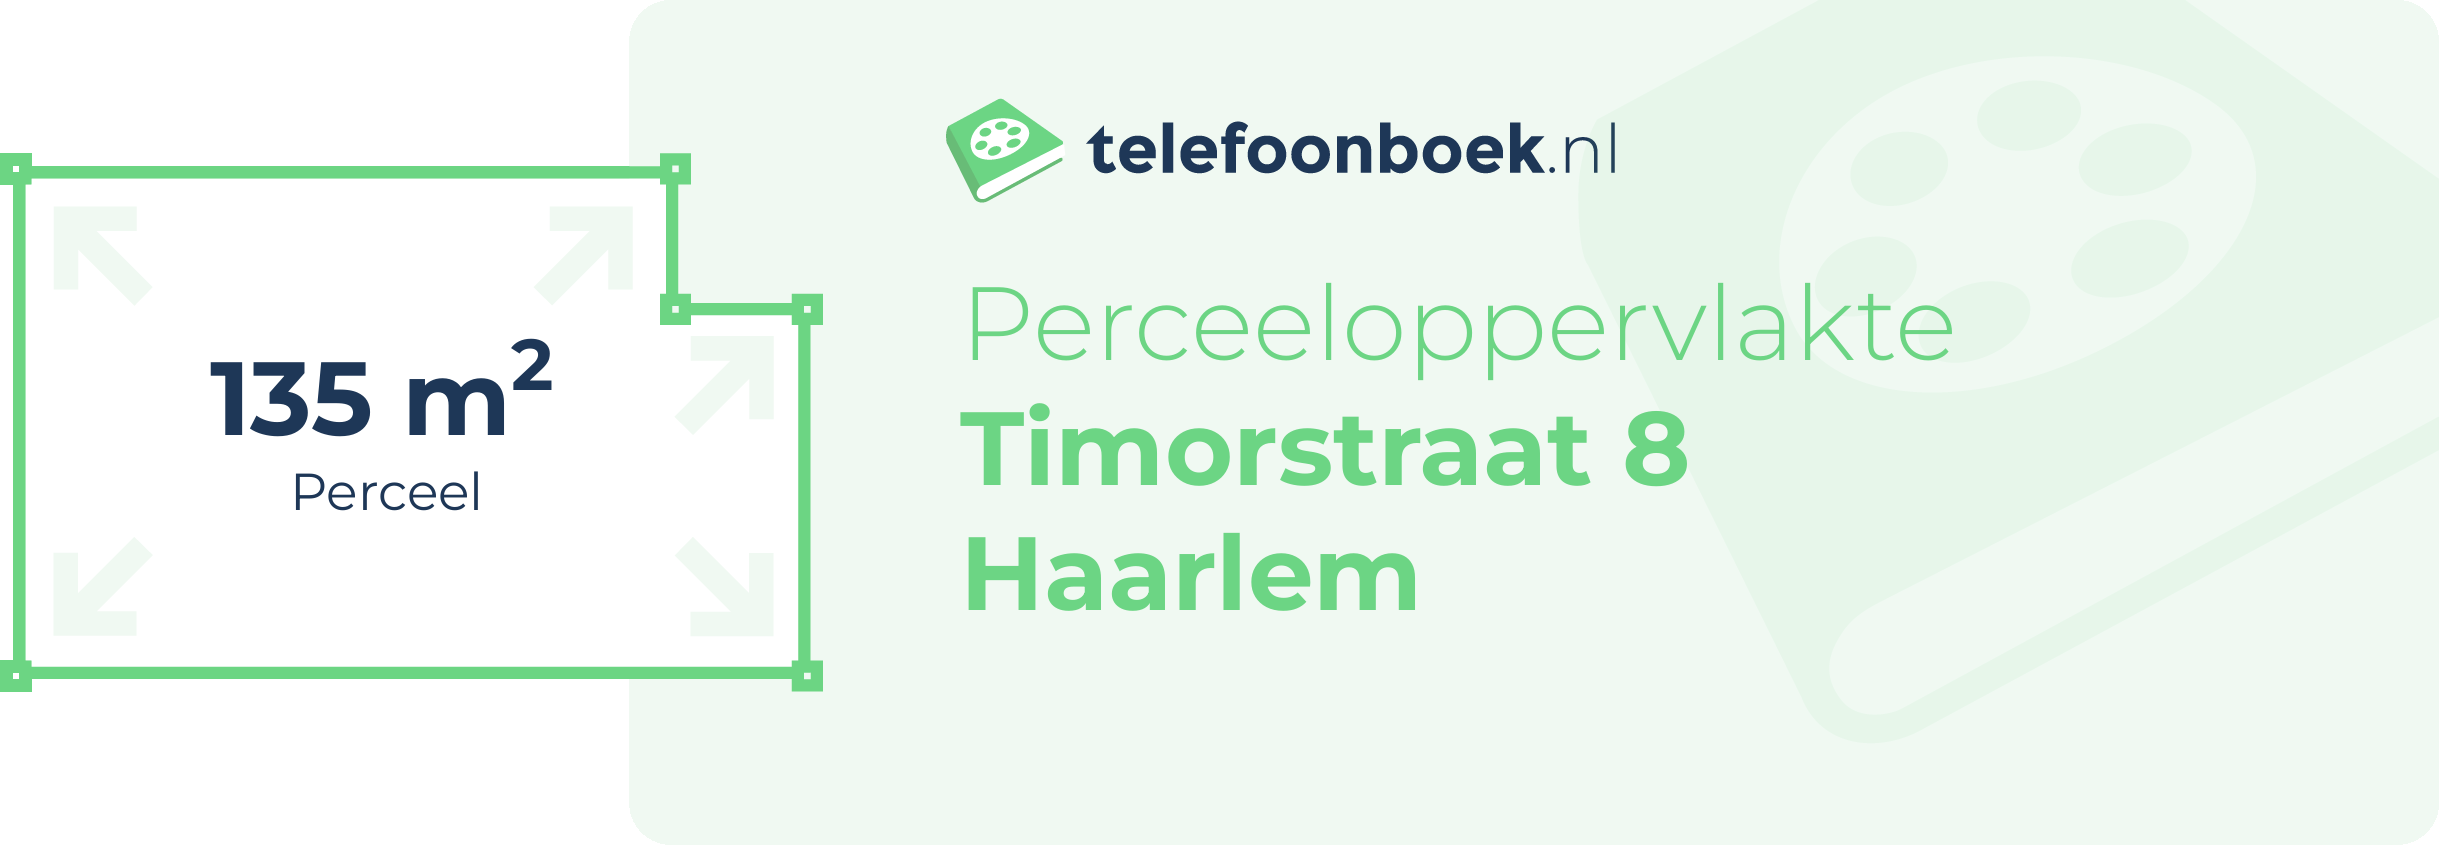 Perceeloppervlakte Timorstraat 8 Haarlem